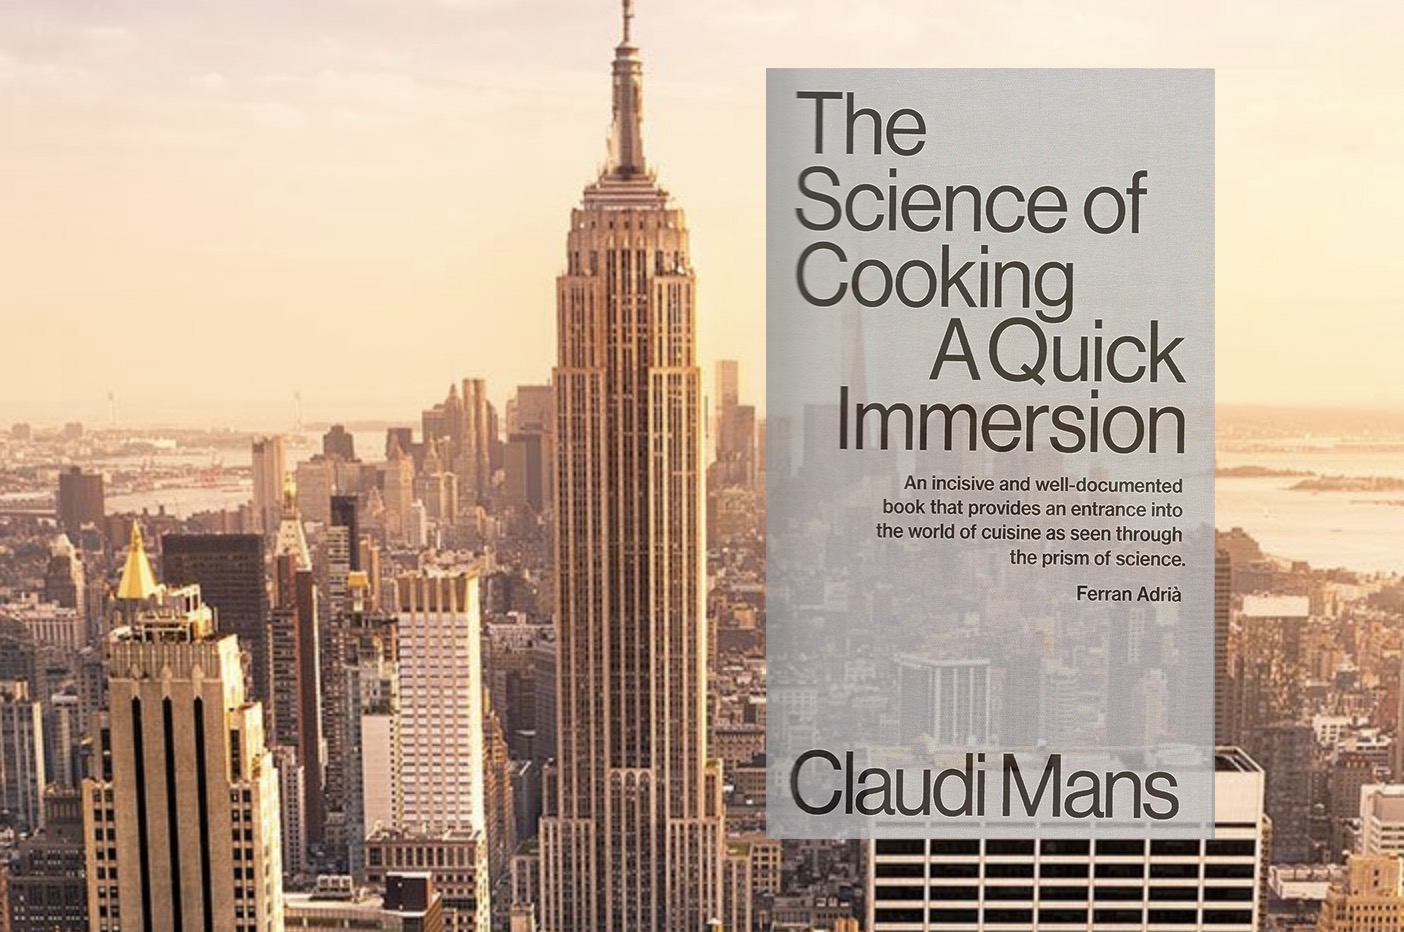 Presentació del llibre “The Science of Cooking. A Quick Immersion” a Nova York